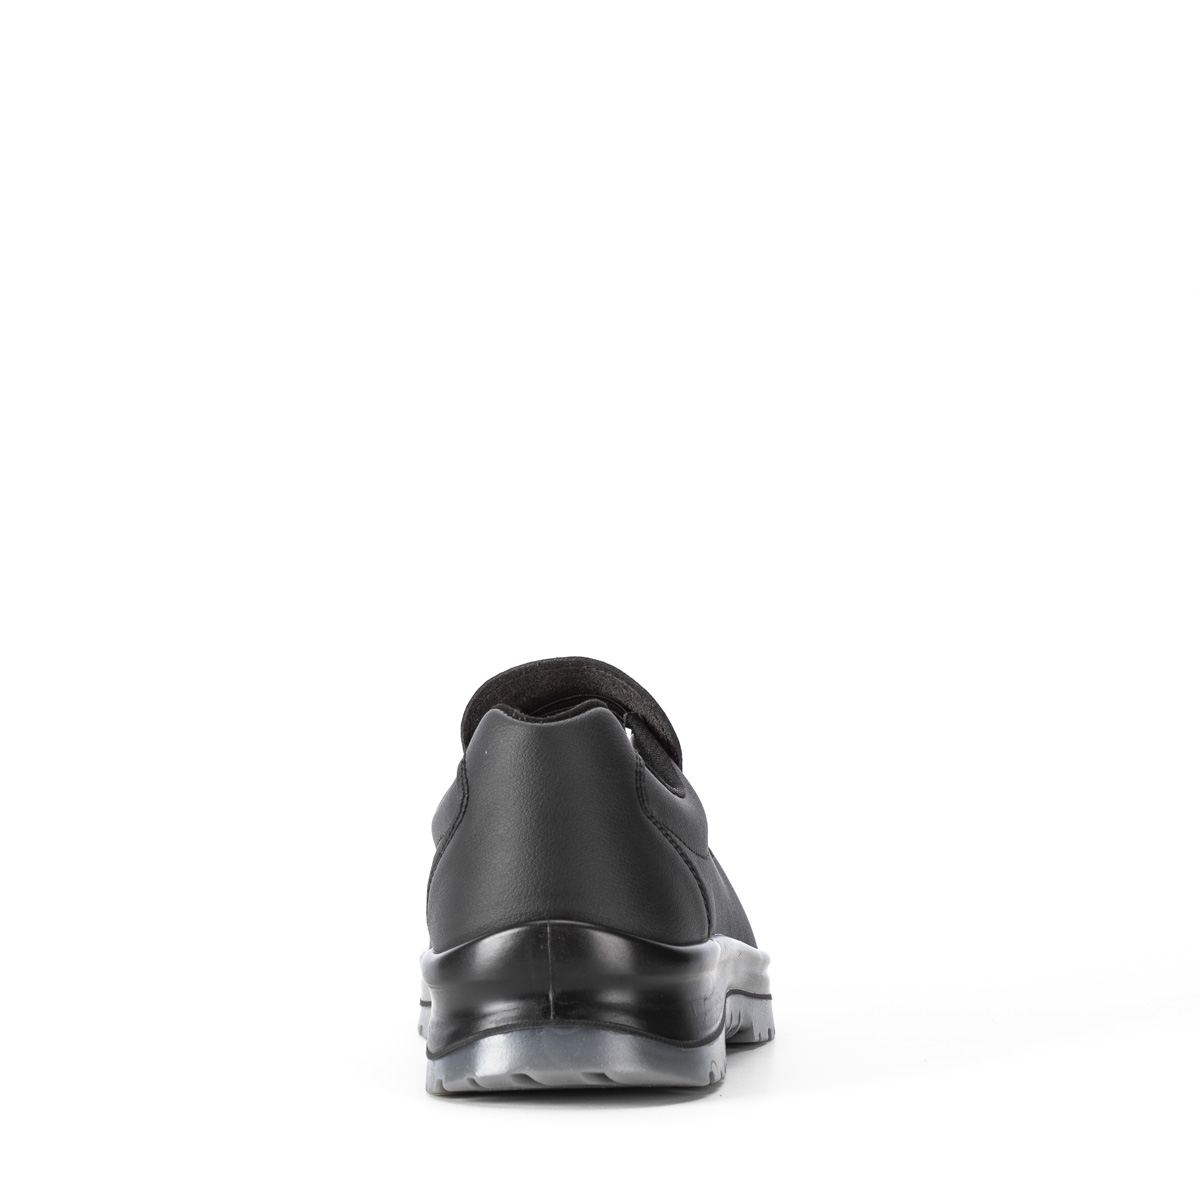 Crystal VENEZIA - Chaussure con classe di protezione S2 SRC - Codice  modello 86203-01 Sixton Peak Safety Shoes